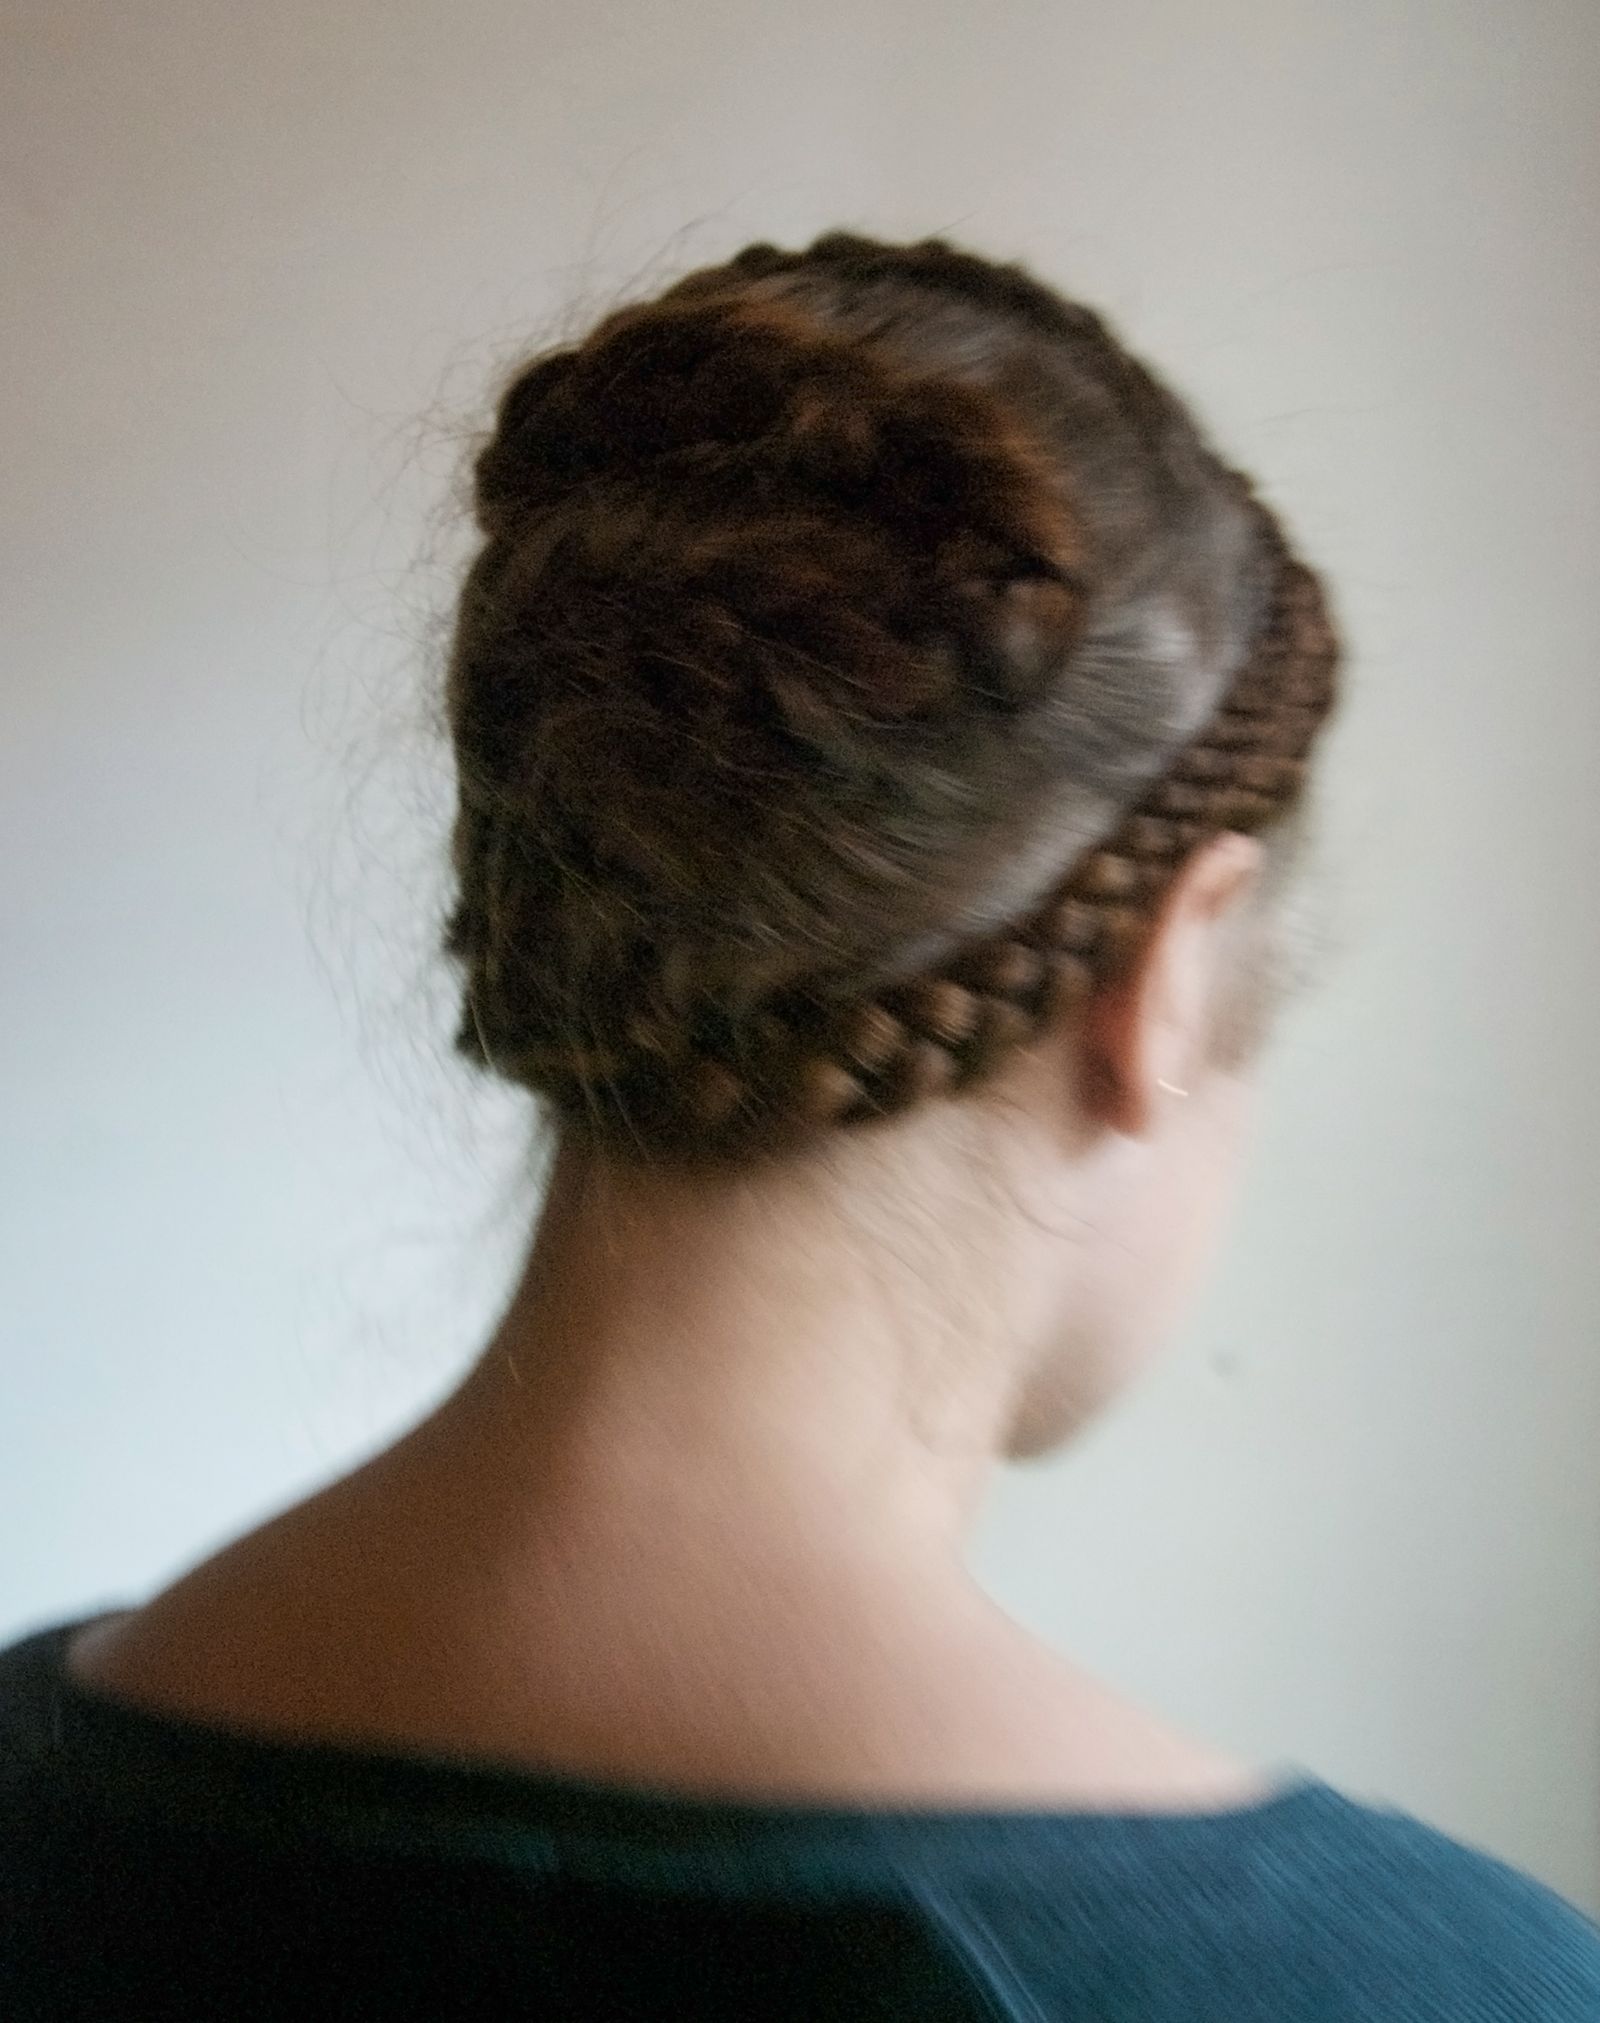 © Katie Swietlik - Self-portrait with fuzzy braids - Autorretrato con trenzas peludas